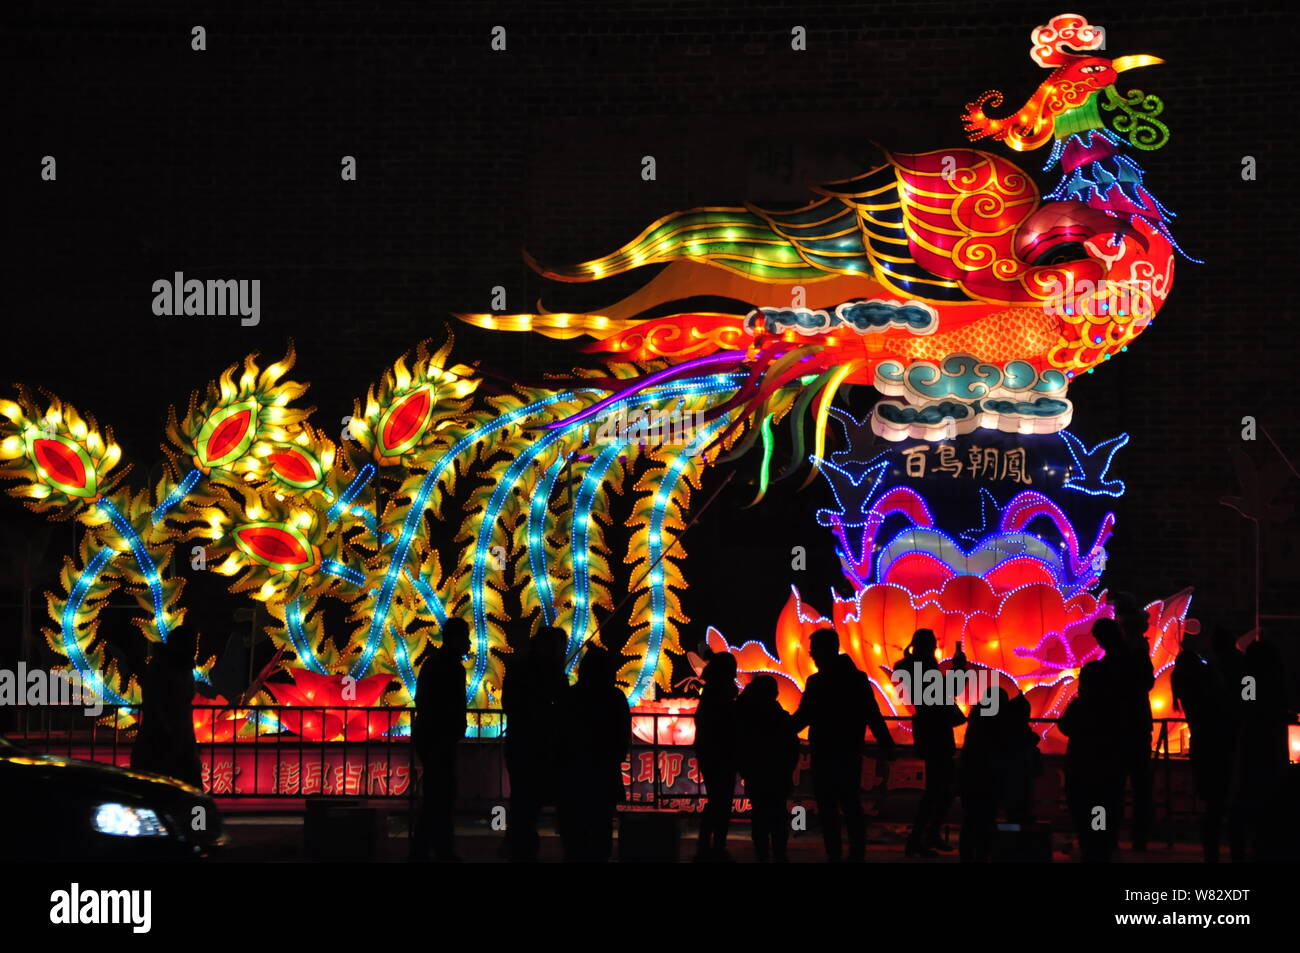 Lanternes sont allumées jusqu'à la Nouvelle Année lunaire chinoise,  également connu sous le nom de Festival du printemps, à une lanterne show à  Linyi City, Shandong province de Chine orientale Photo Stock -